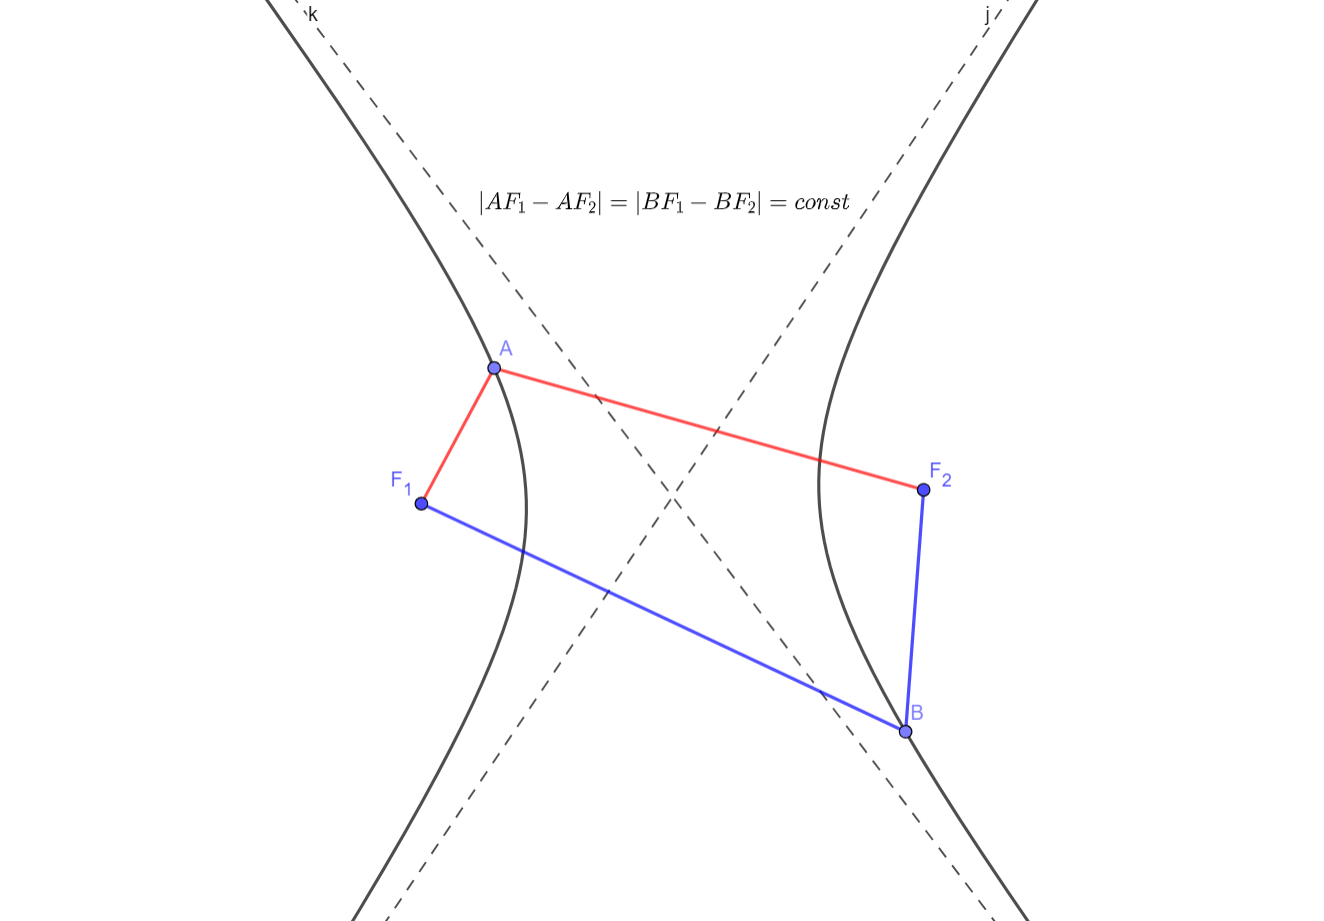 Понятное представление гиперболы с фокусами F1 и F2. Пунктиром проведены асимптоты.